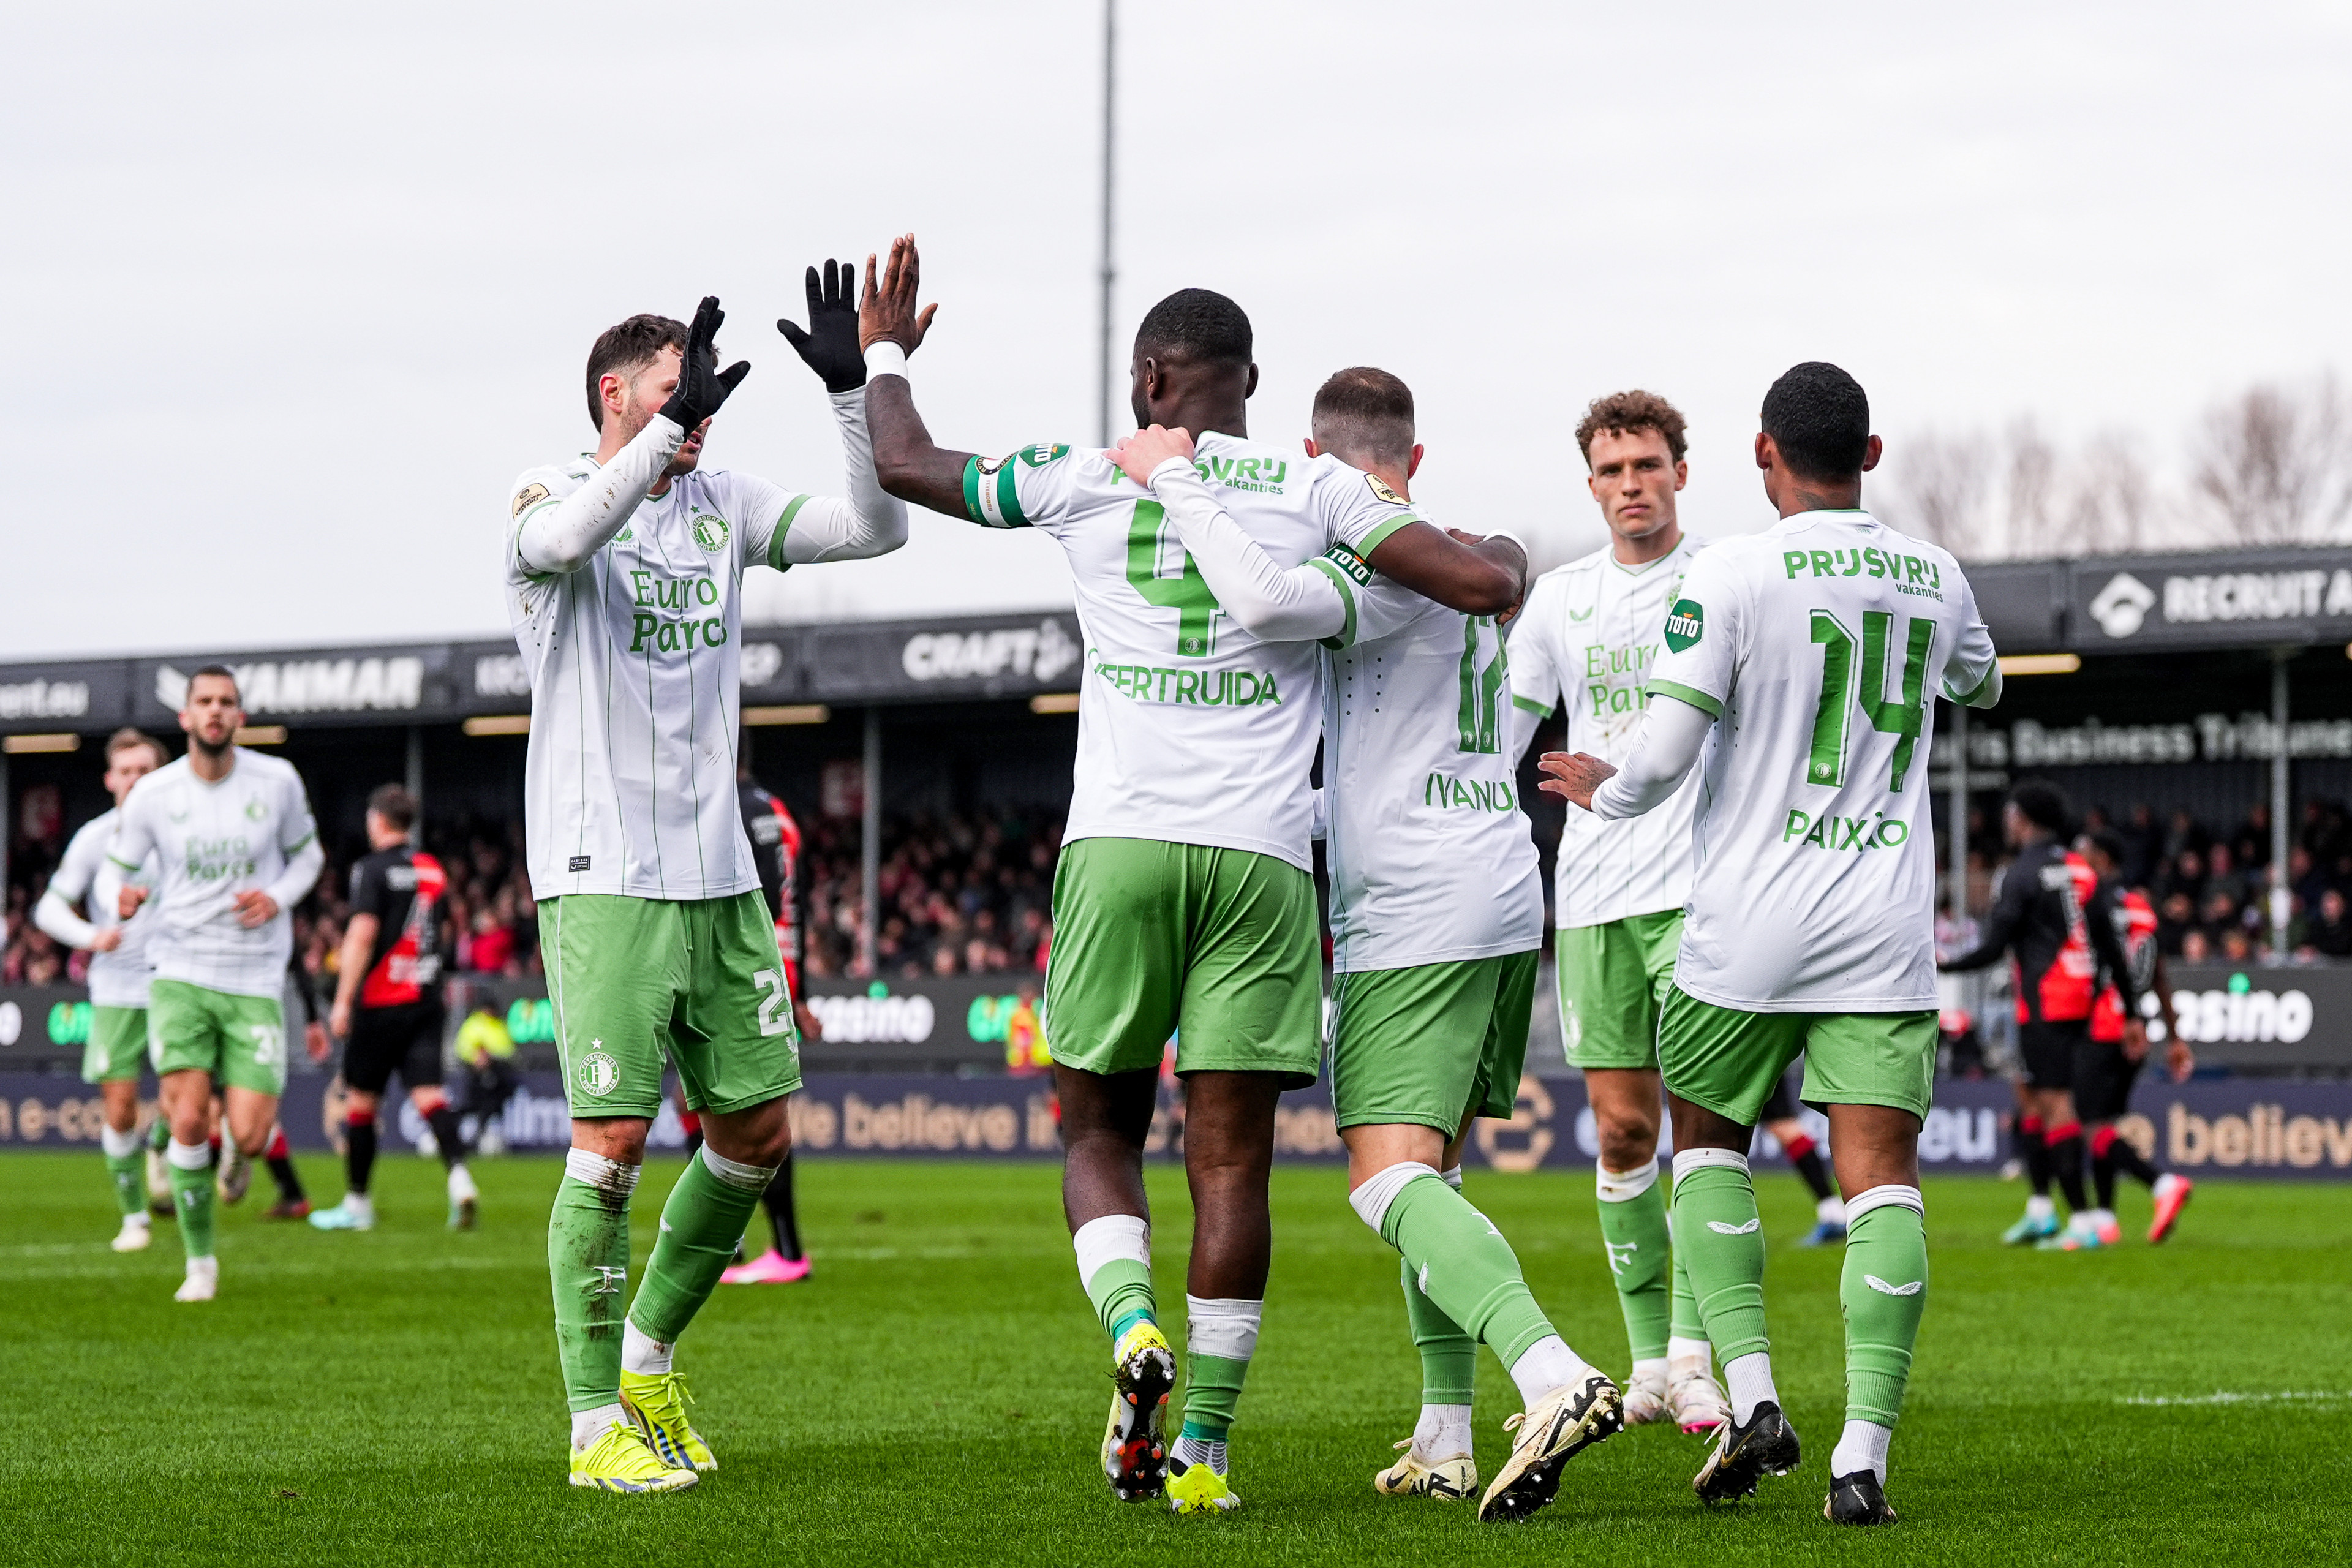 Beoordeel de spelers voor de wedstrijd Almere City - Feyenoord (0-2)